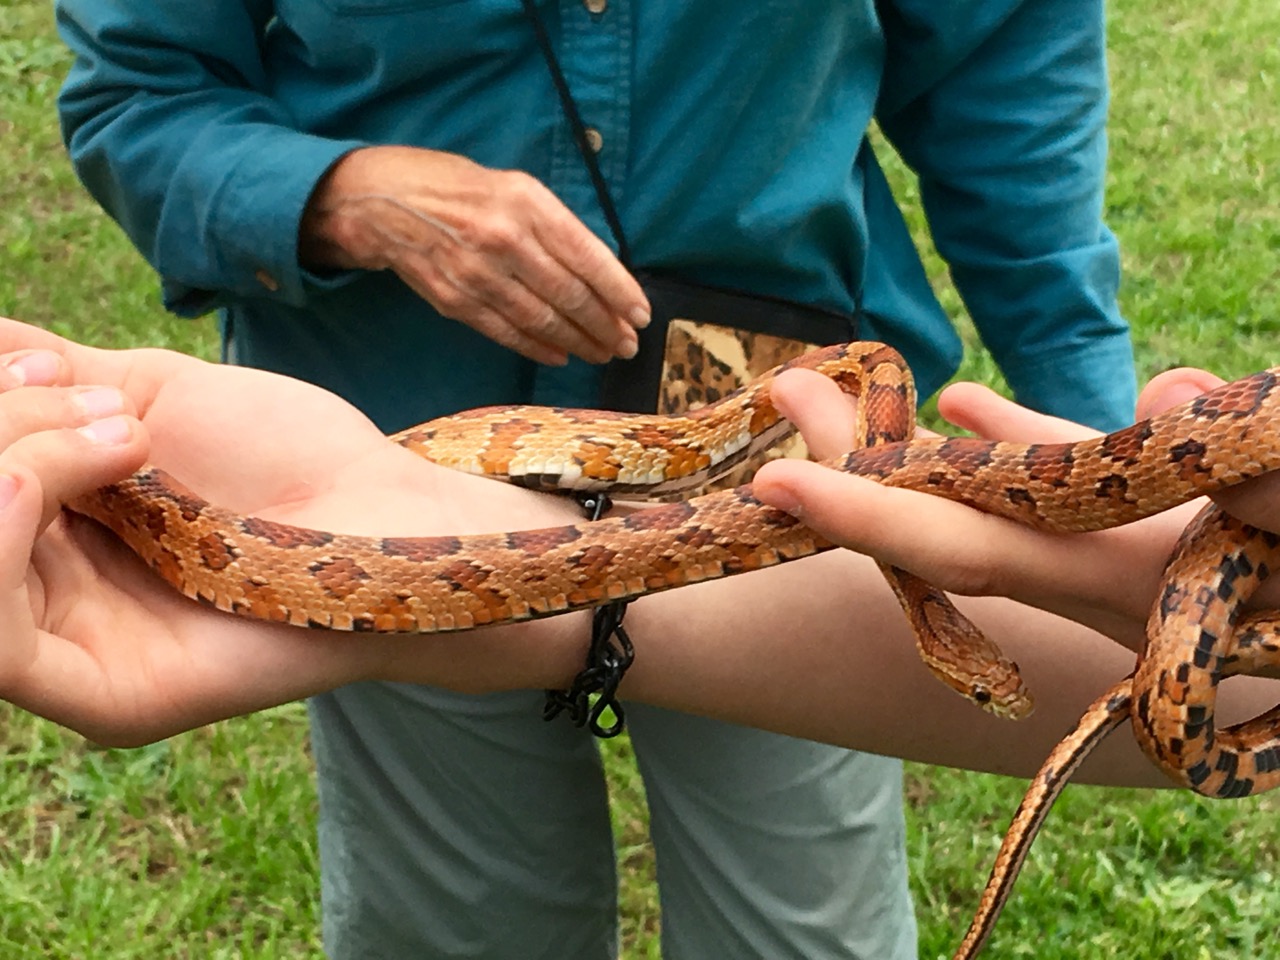 Snake being held